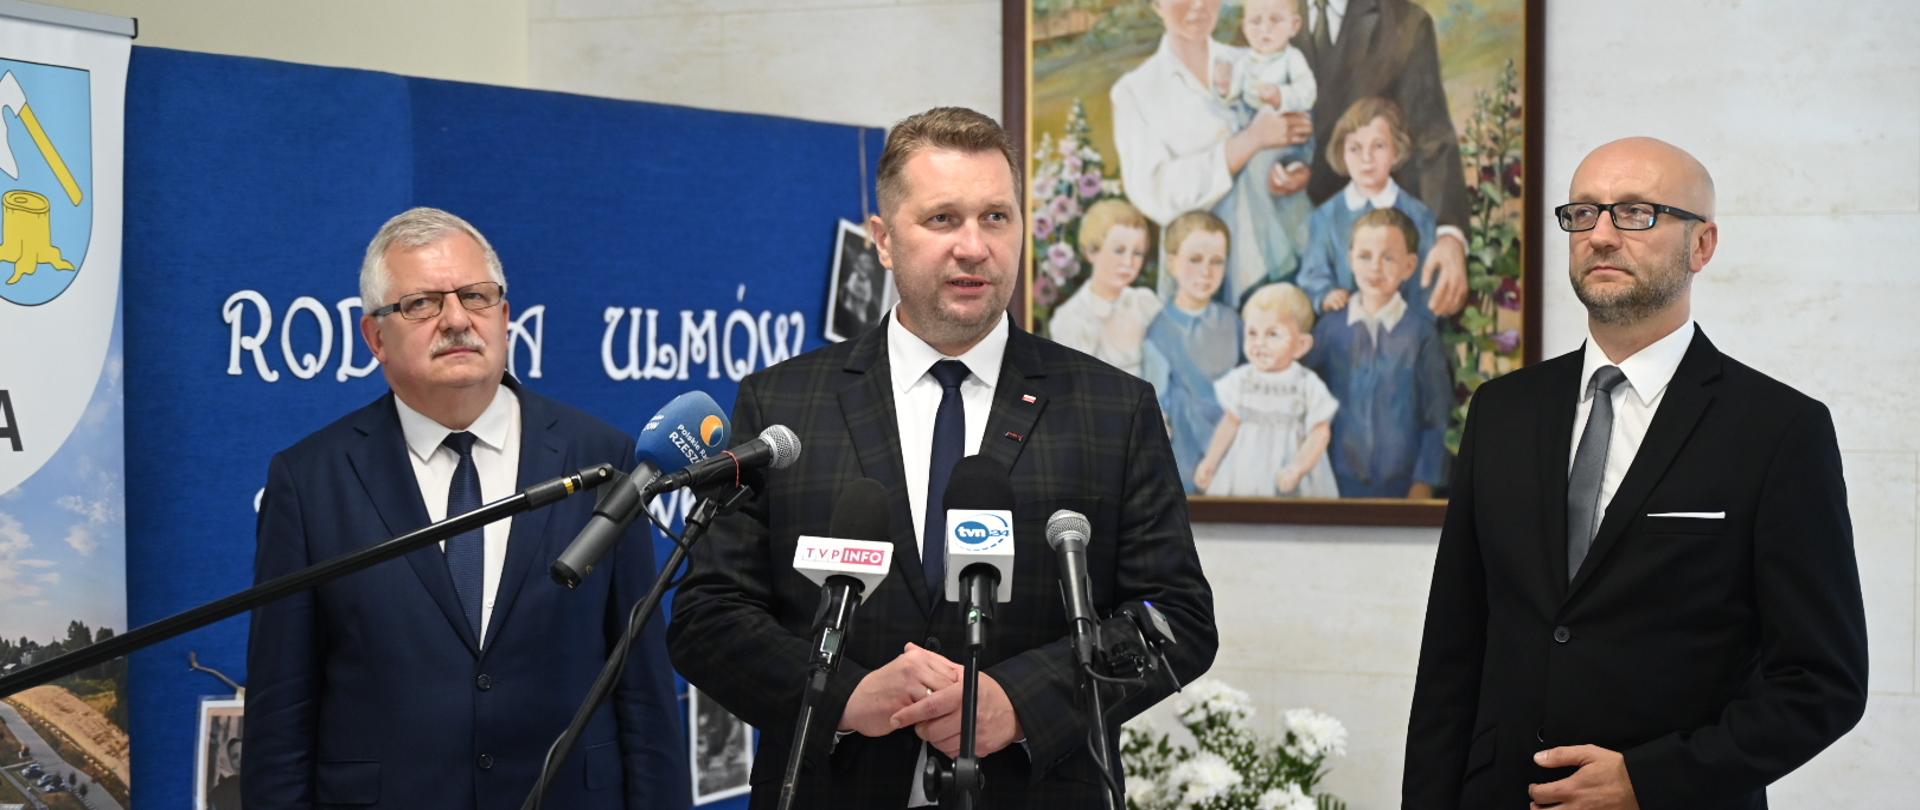 Minister Czarnek stoi pod ścianą na której wisi rodzinny portret, obok niego dwóch mężczyzn w garniturach, przed nimi kilka mikrofonów.